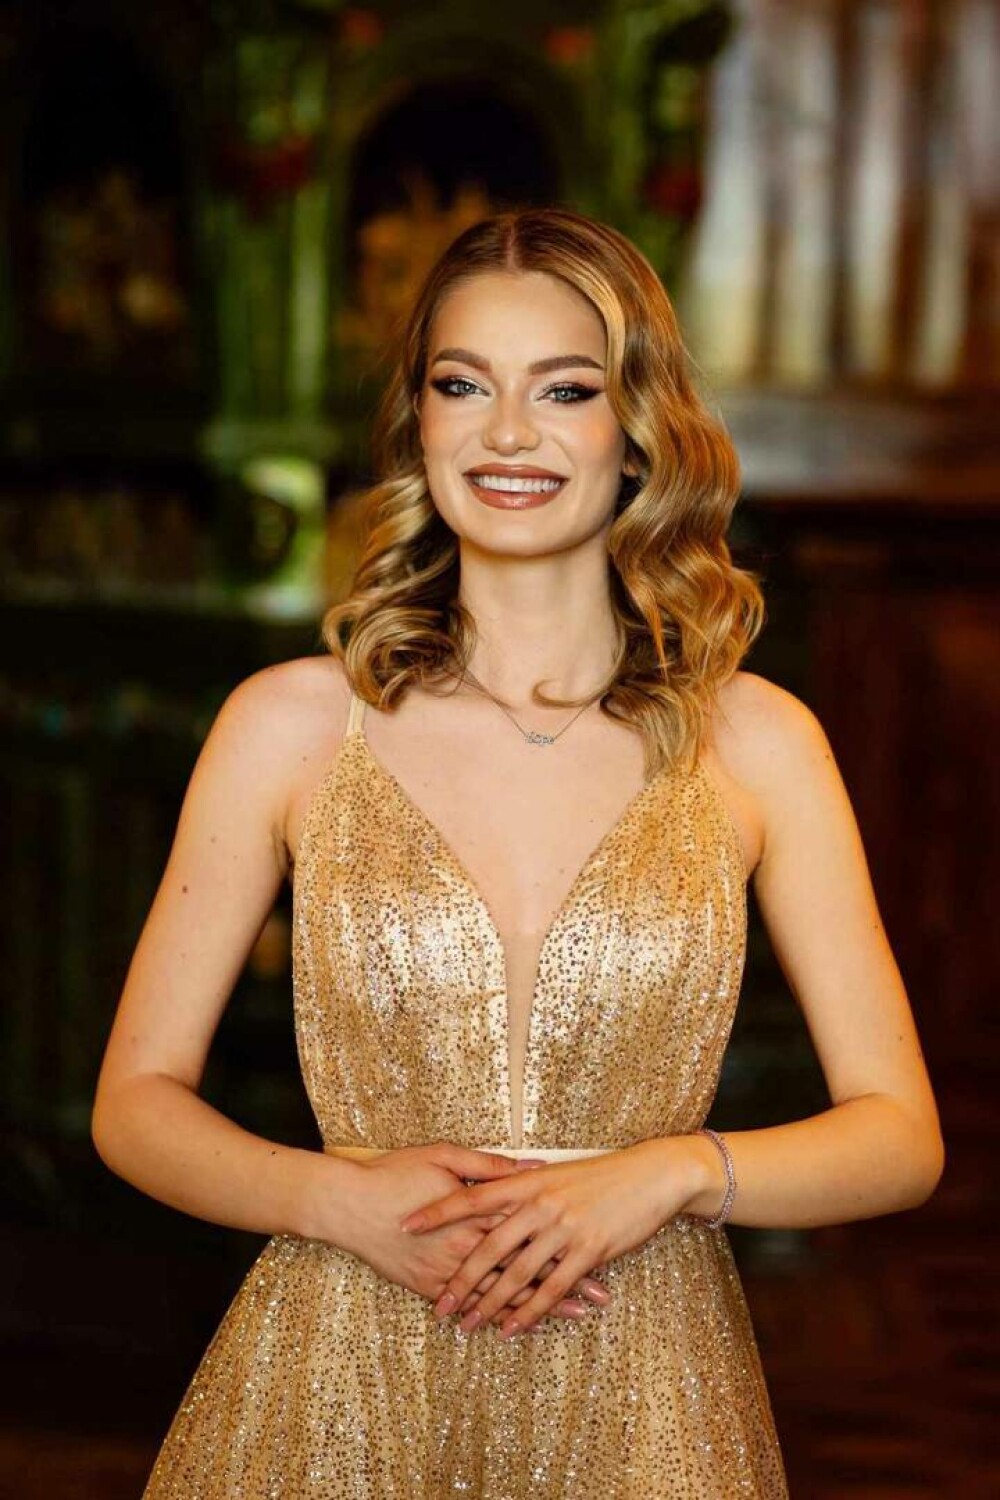 Fiica unui cunoscut politician va reprezenta România la un important concurs de miss. ”Cu bucurie și onoare” GALERIE FOTO - Imaginea 7